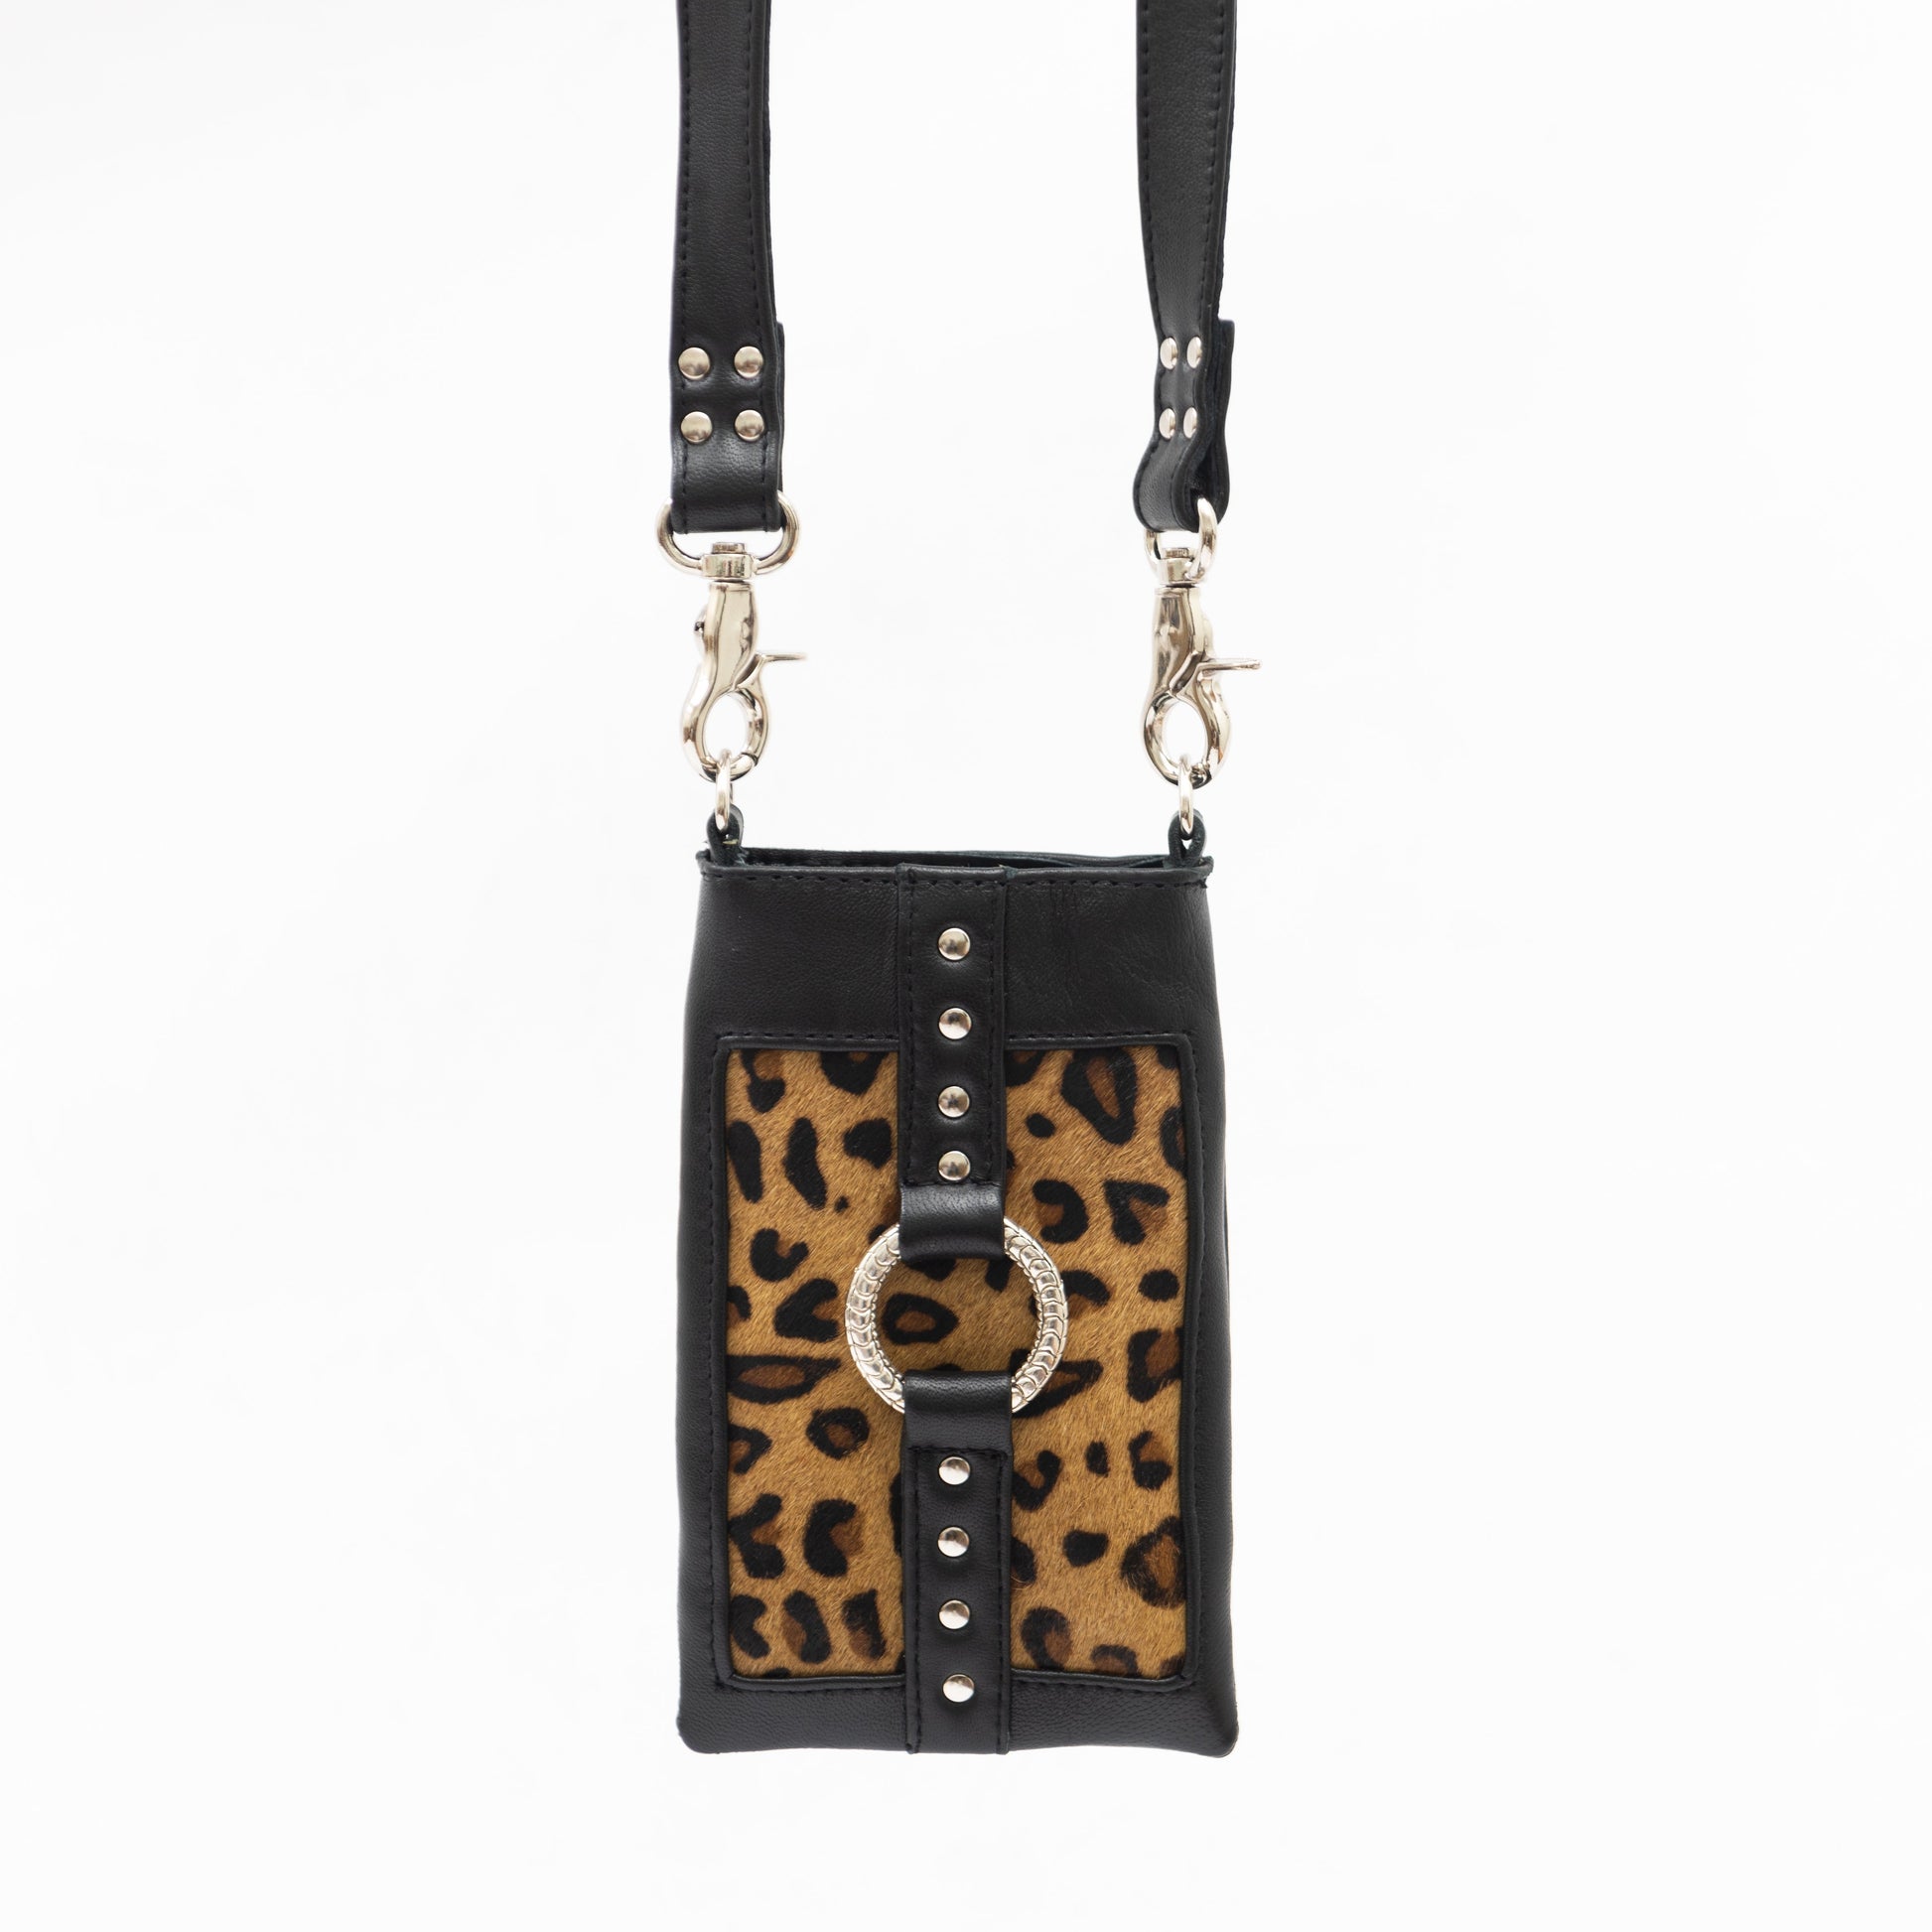 Purse Strap Adjustable Crossbody Bag Strap Silver Hardware Shoulder  (Leopard)